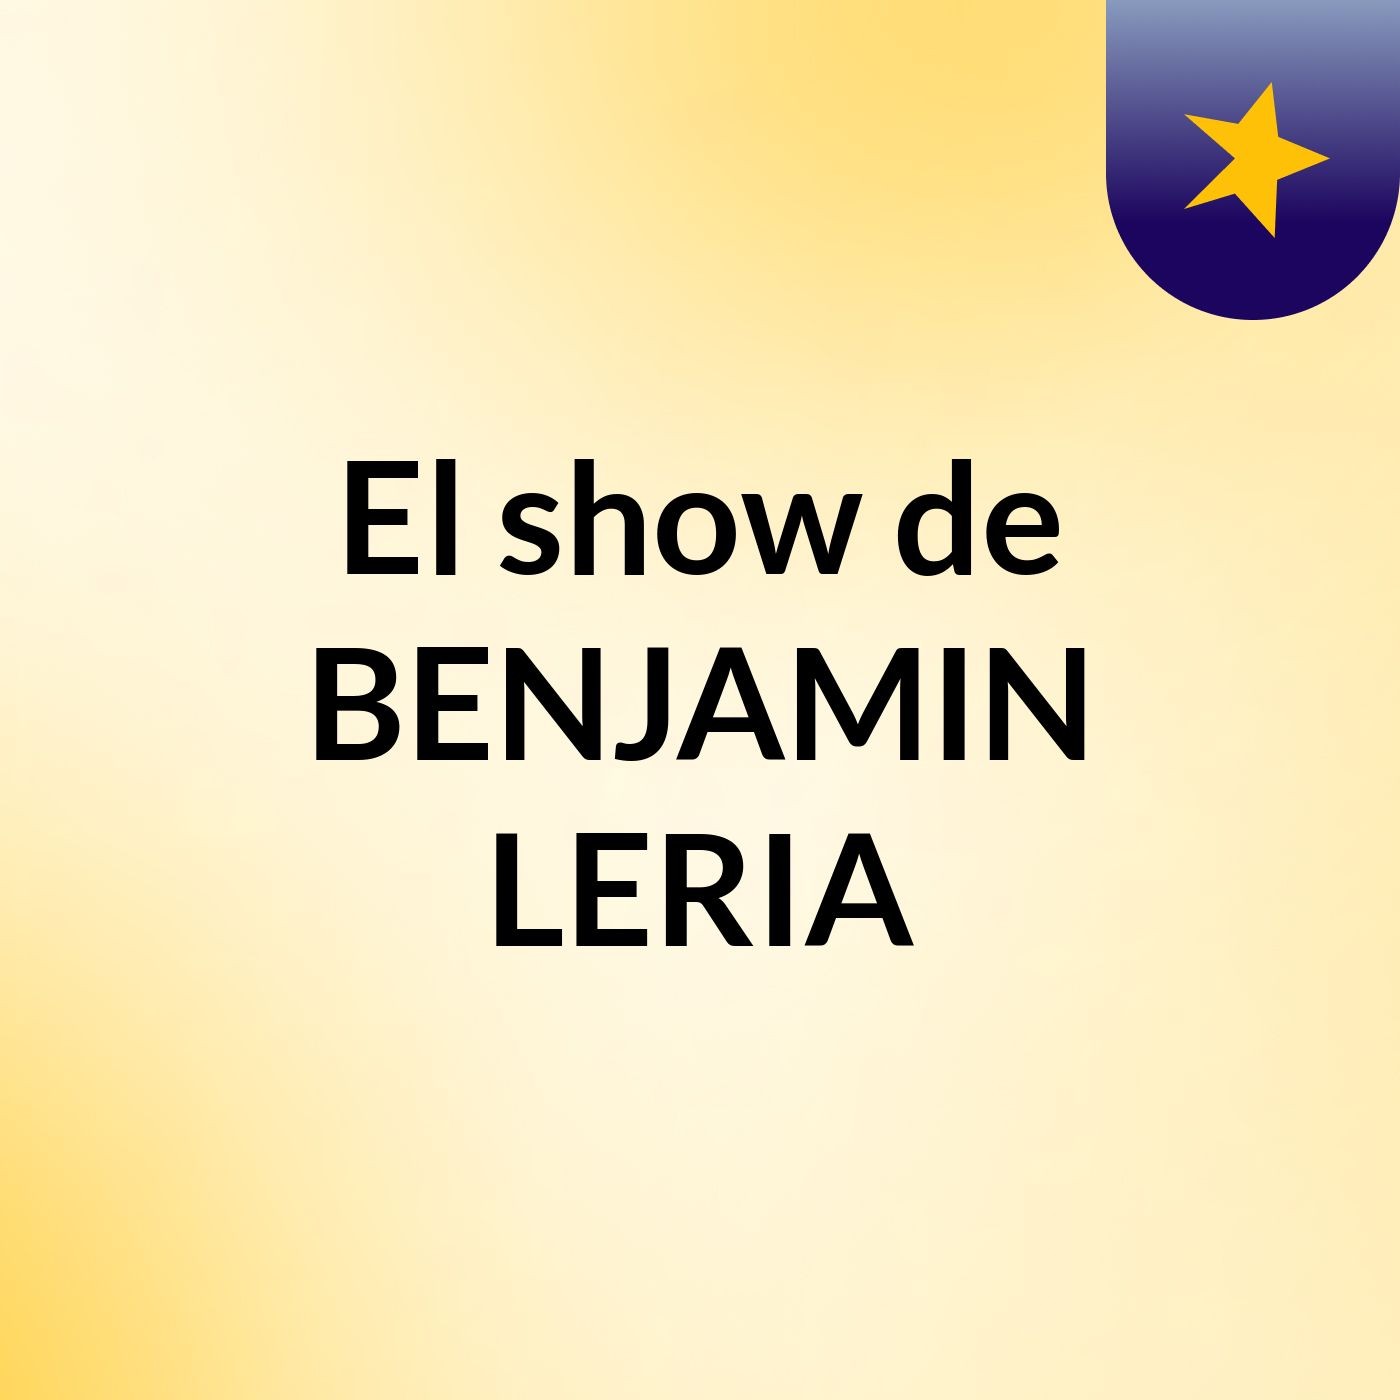 Episodio 12 - El show de BENJAMIN LERIA